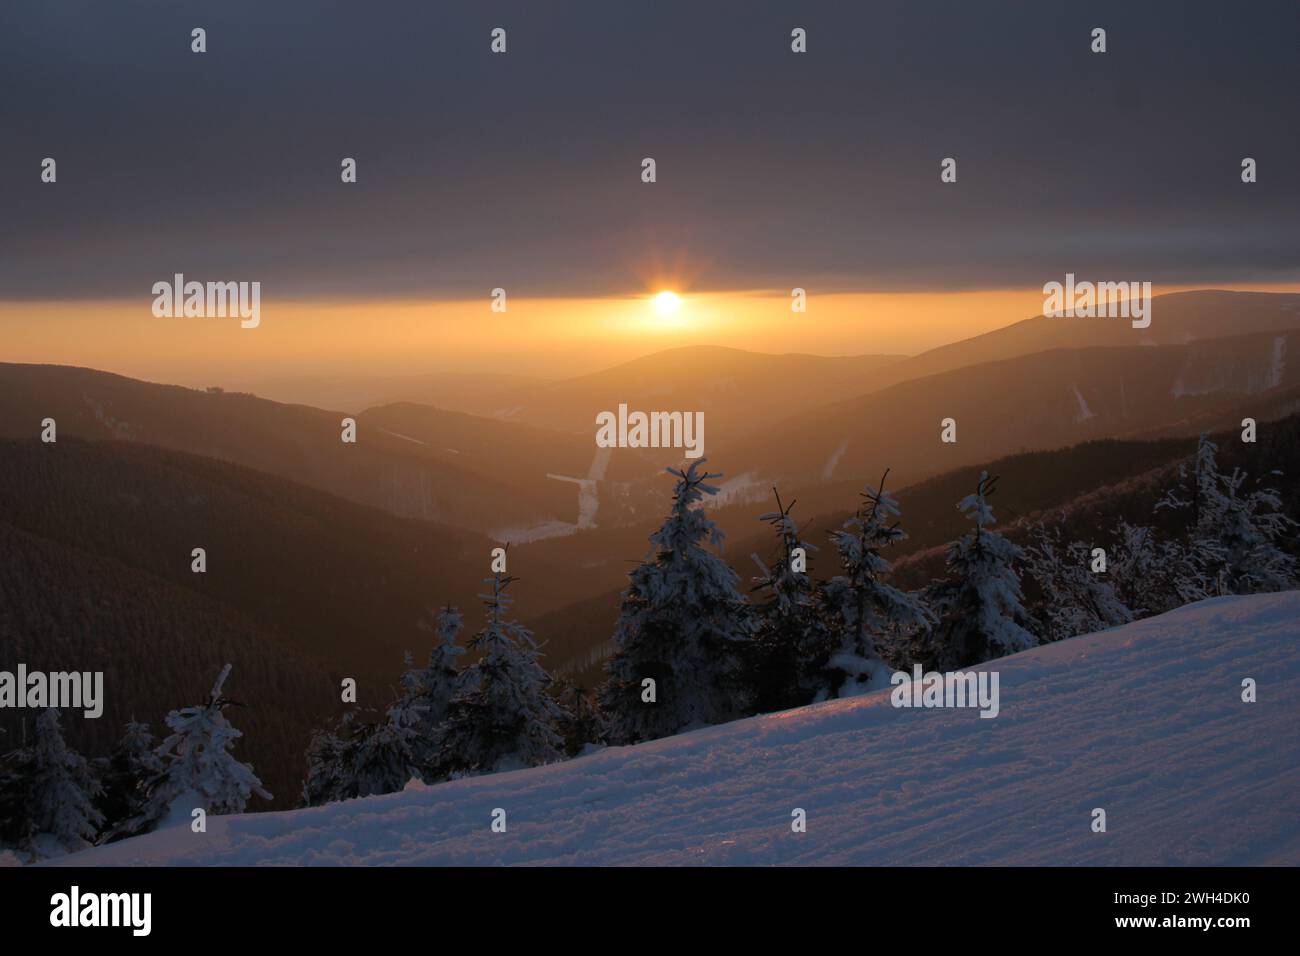 Coucher de soleil dans les montagnes et sapins enneigés dans les Carpates de la République tchèque. Photo prise sur une piste de ski de fond Banque D'Images